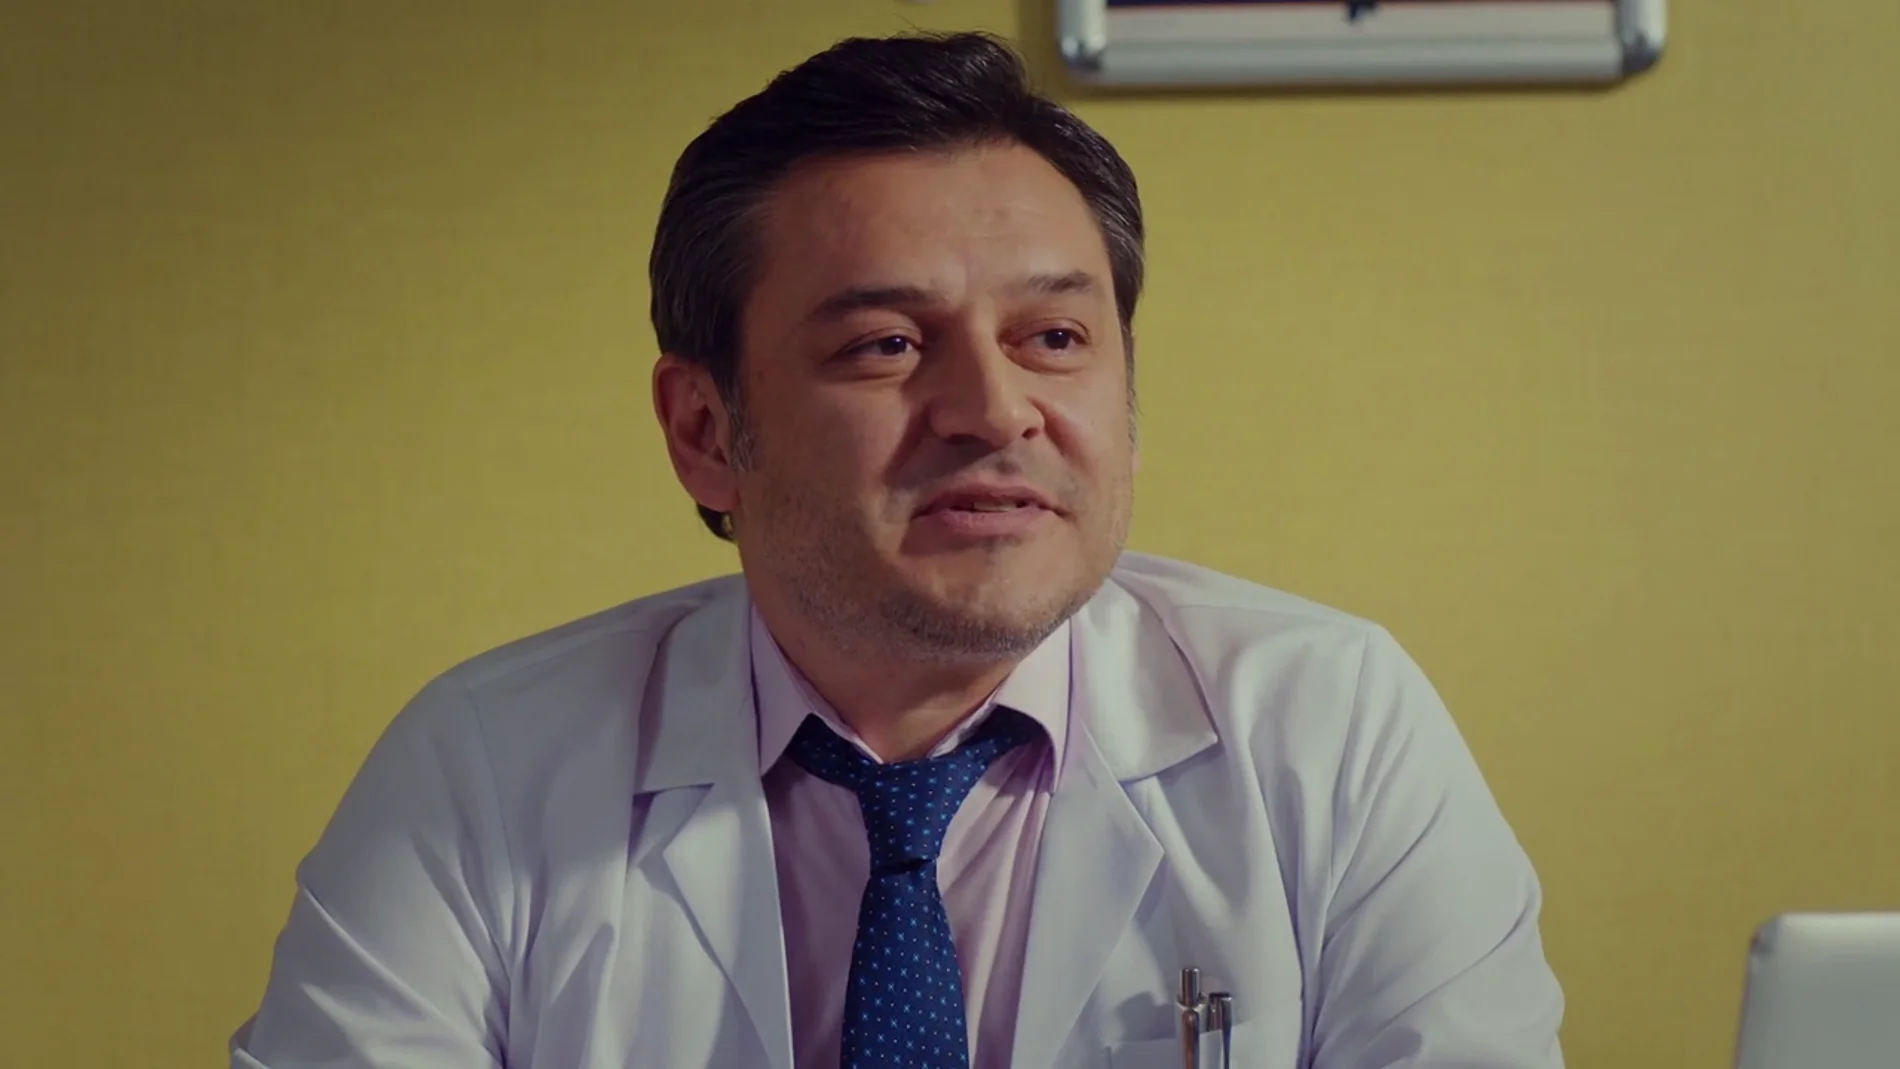 La importante petición de Demir al doctor de Öykü